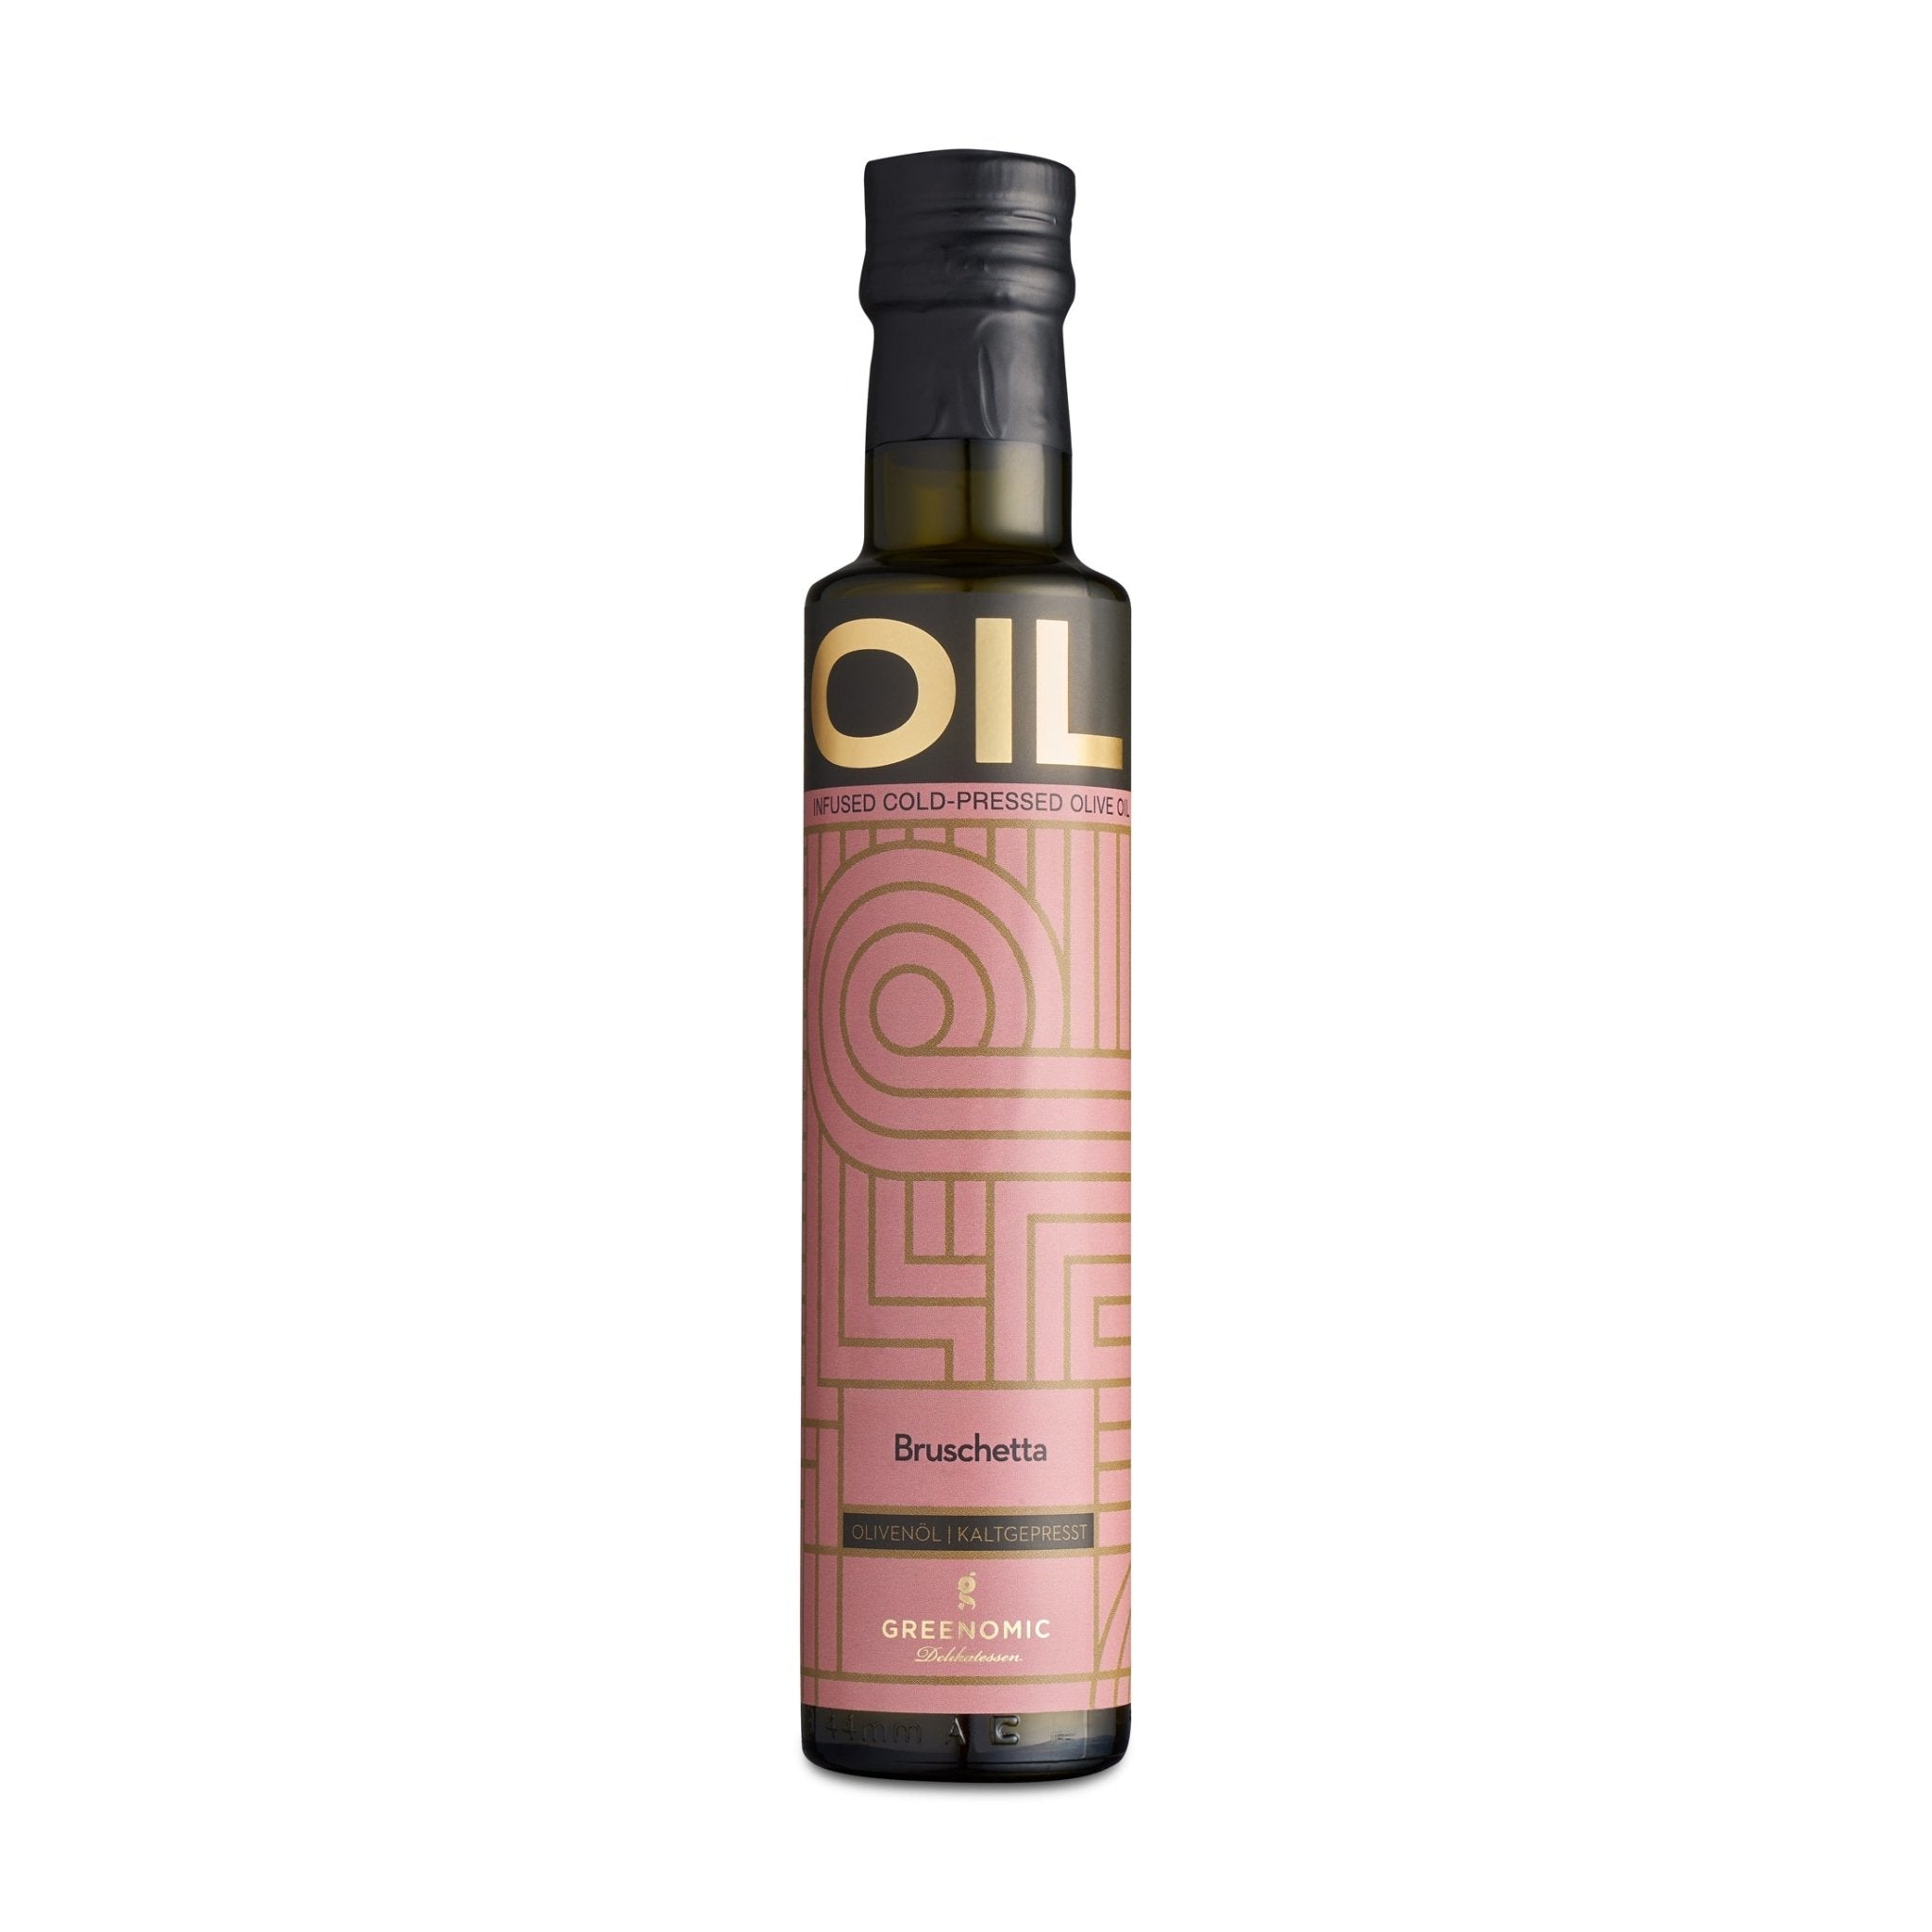 Bruschetta - Olivenöl kaltgepresst - Genussbote